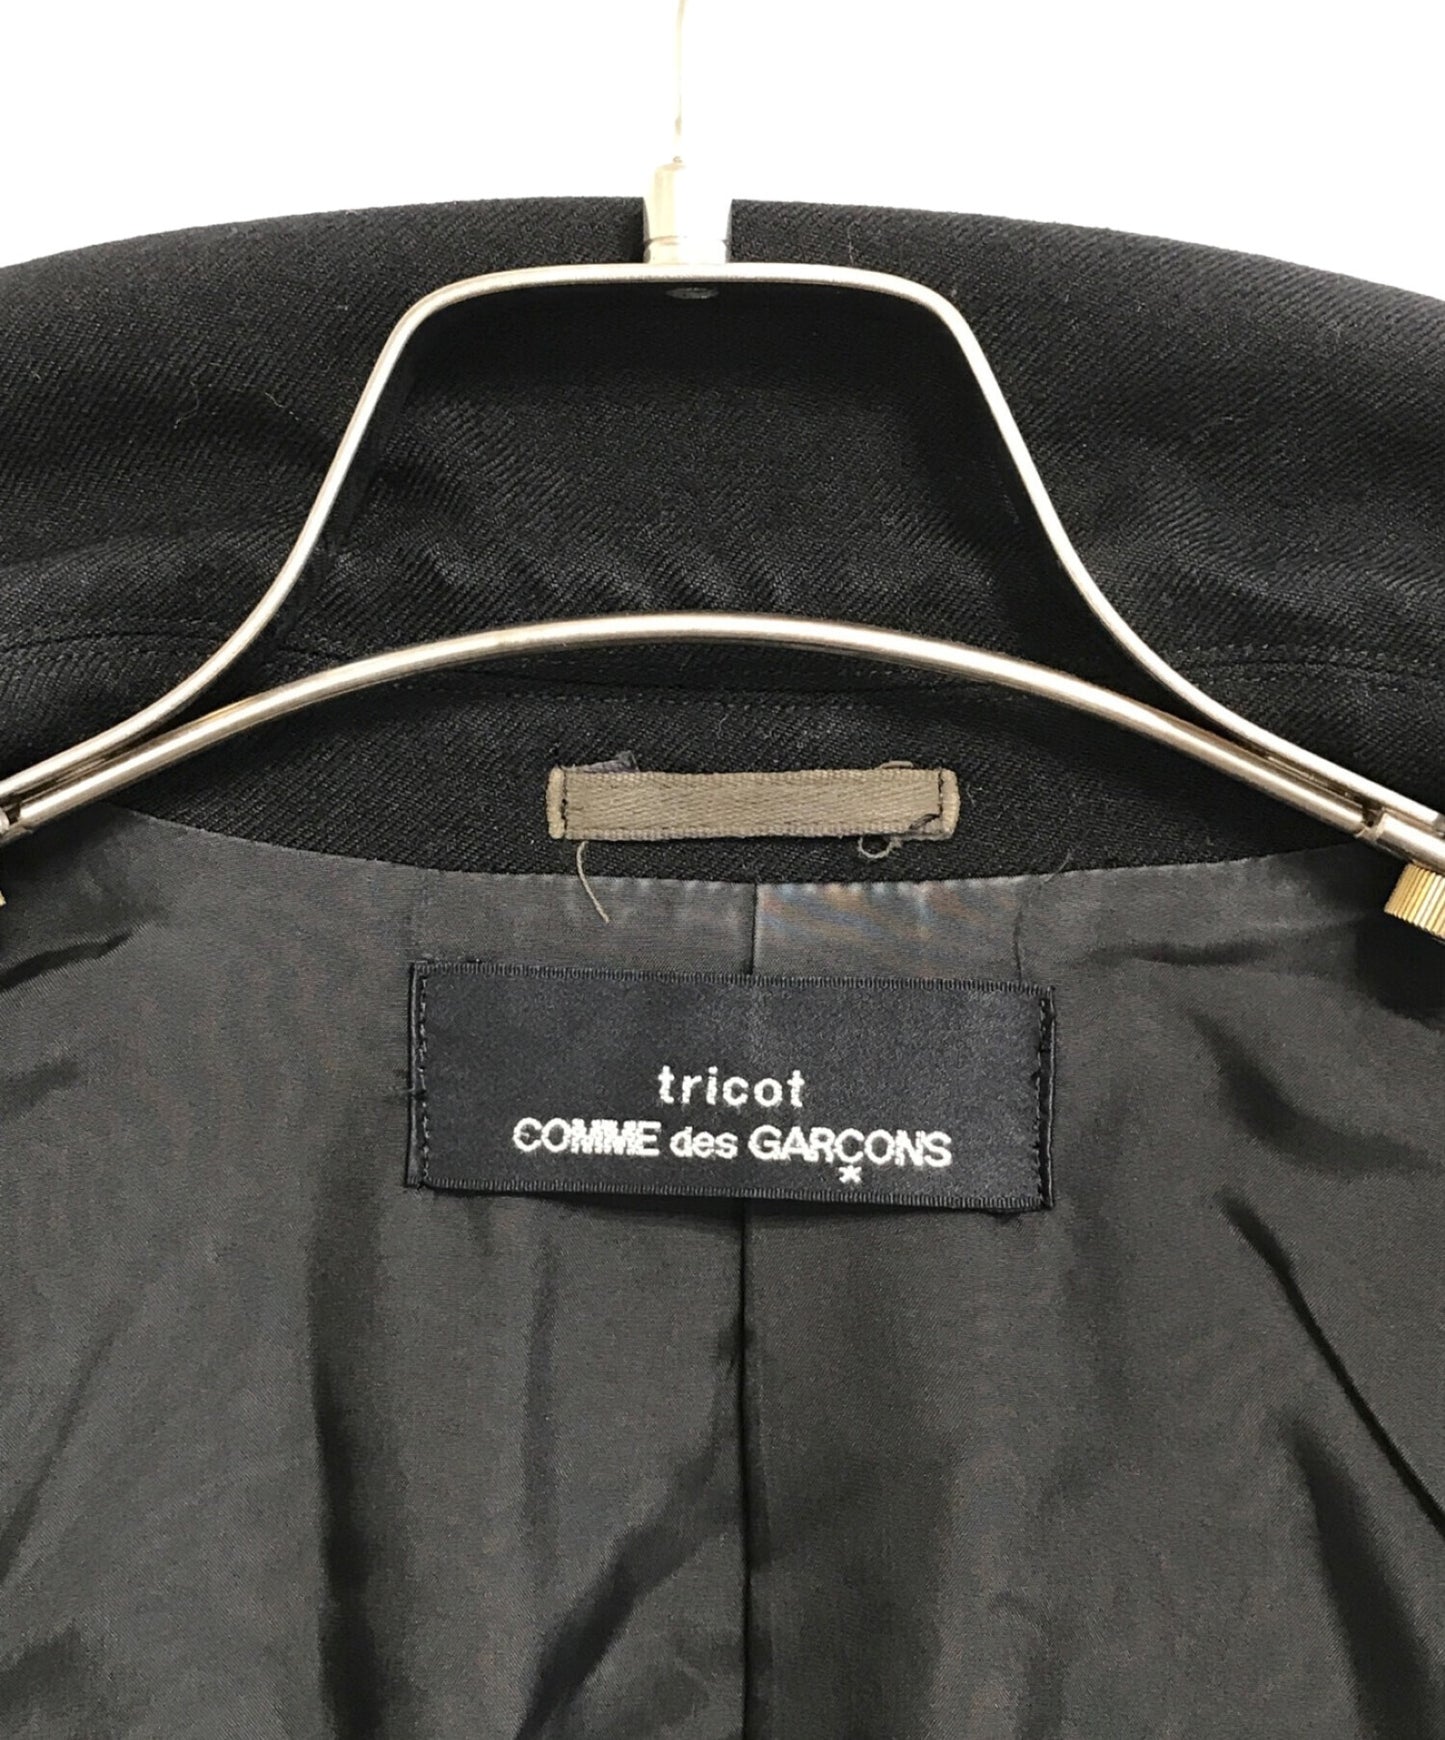 TRICOT Comme des Garcons [Old] Jacket Wool Gaber ที่ปรับแต่ง